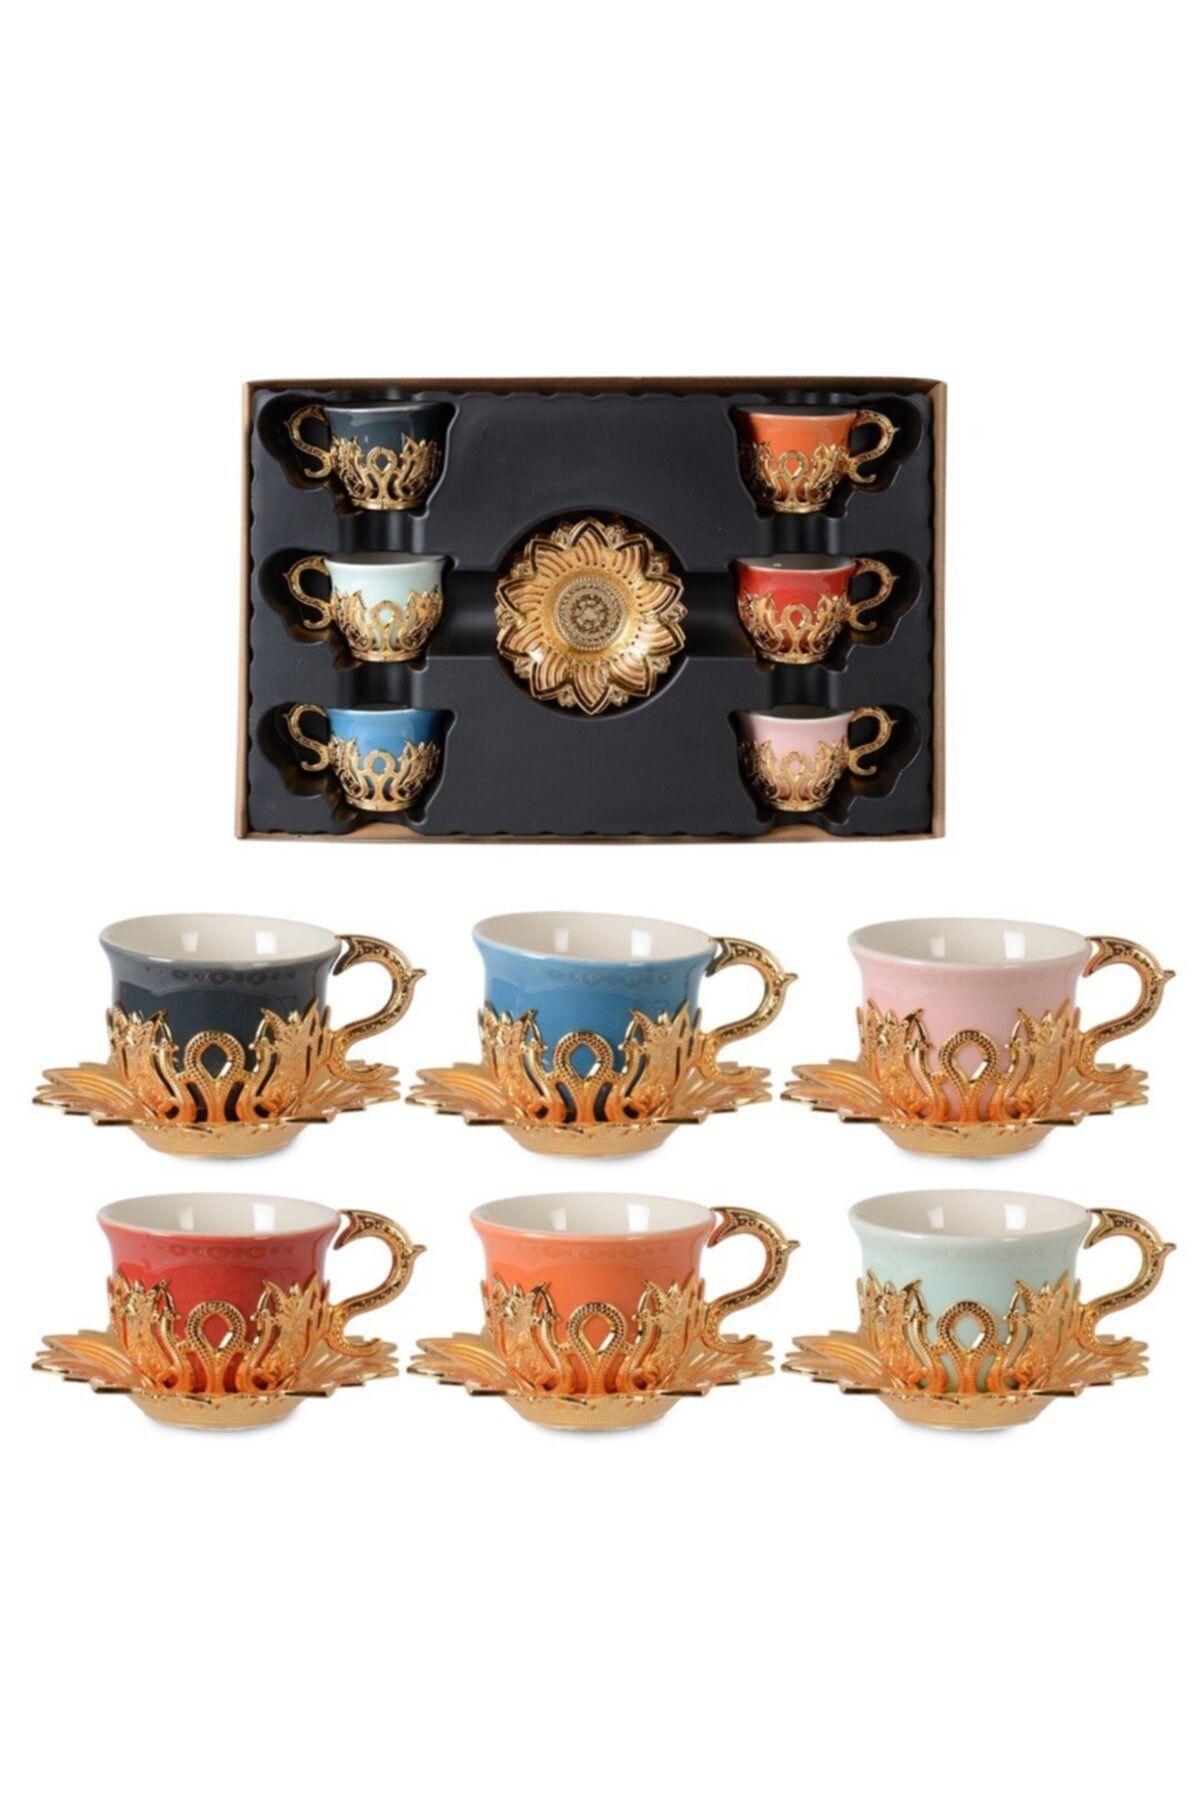 İpek Porselen Ahsen Tiryaki 6 Kişilik Renkli Kahve Fincan Takımı Altın